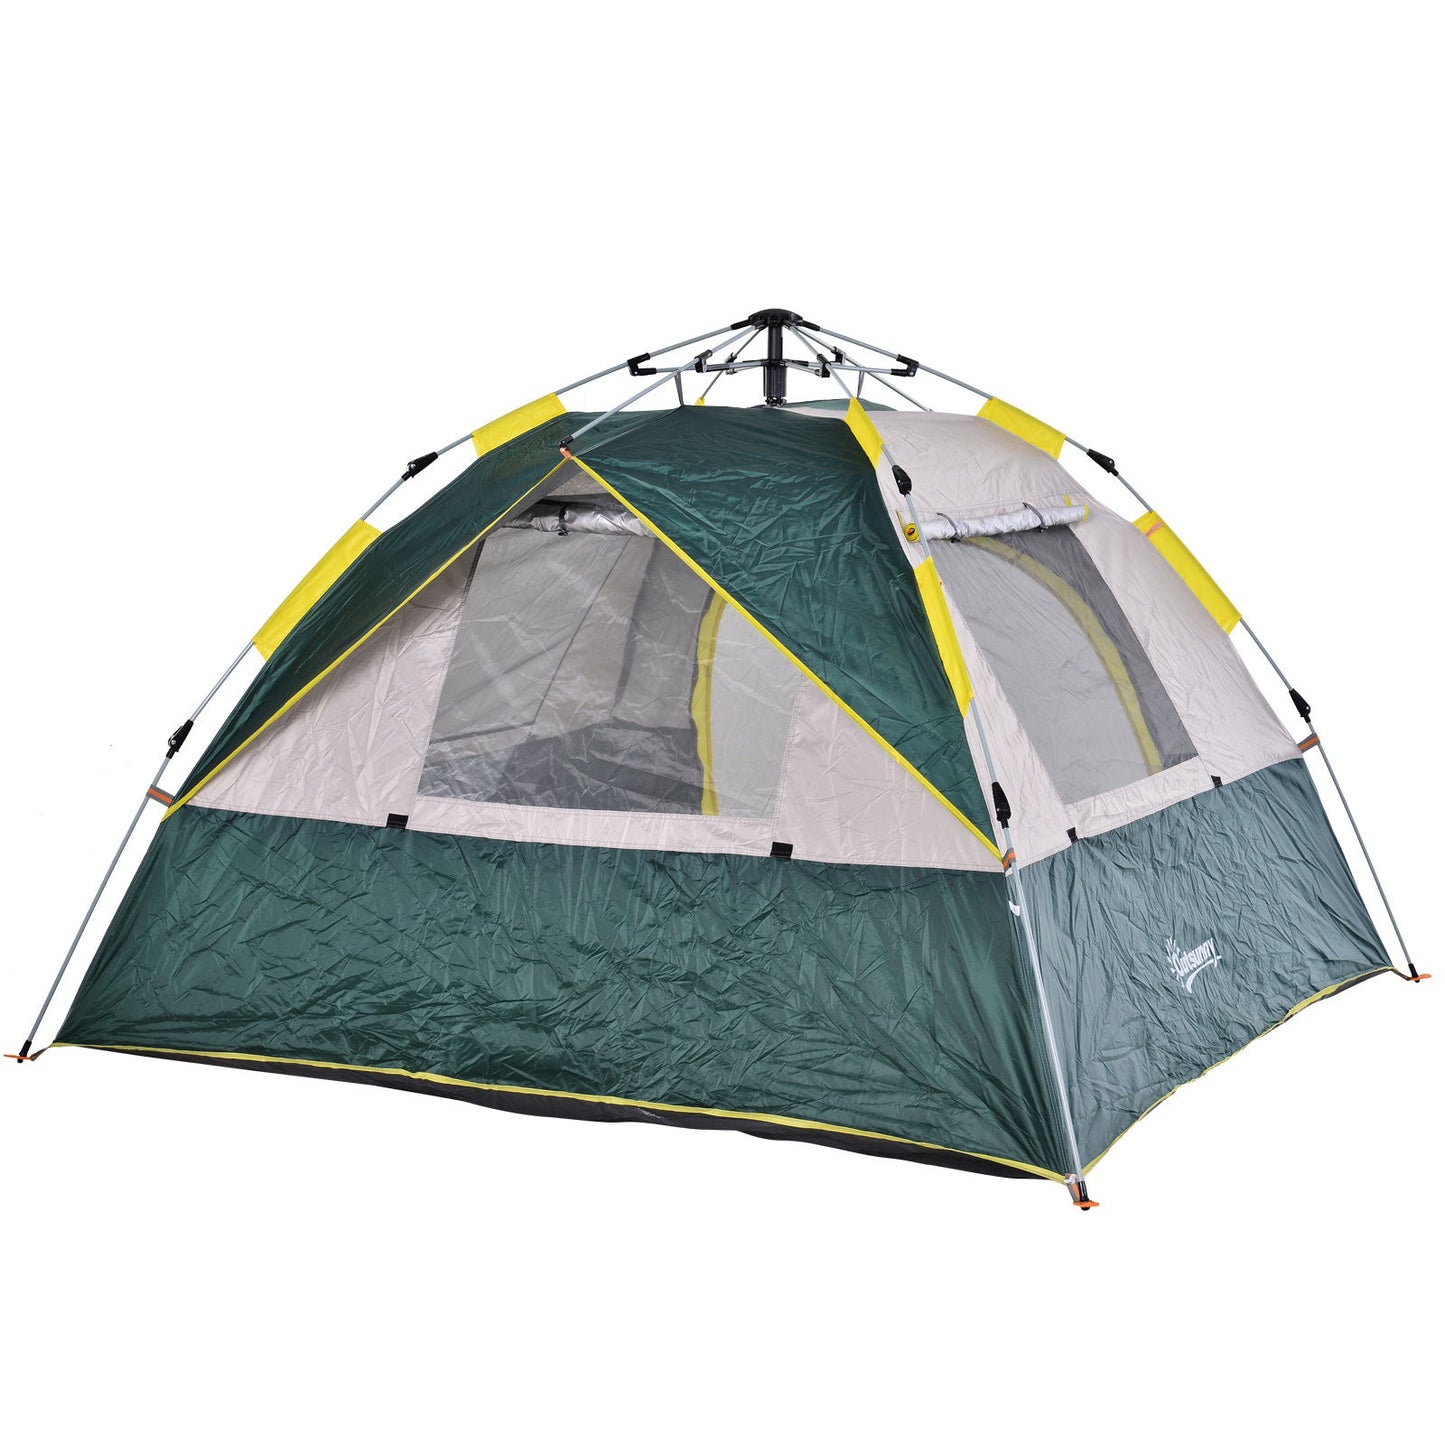 Nancy's Pettville Kampeertent - Camping tent - Strandtent - Groen - 205 x 195 x 135 cm